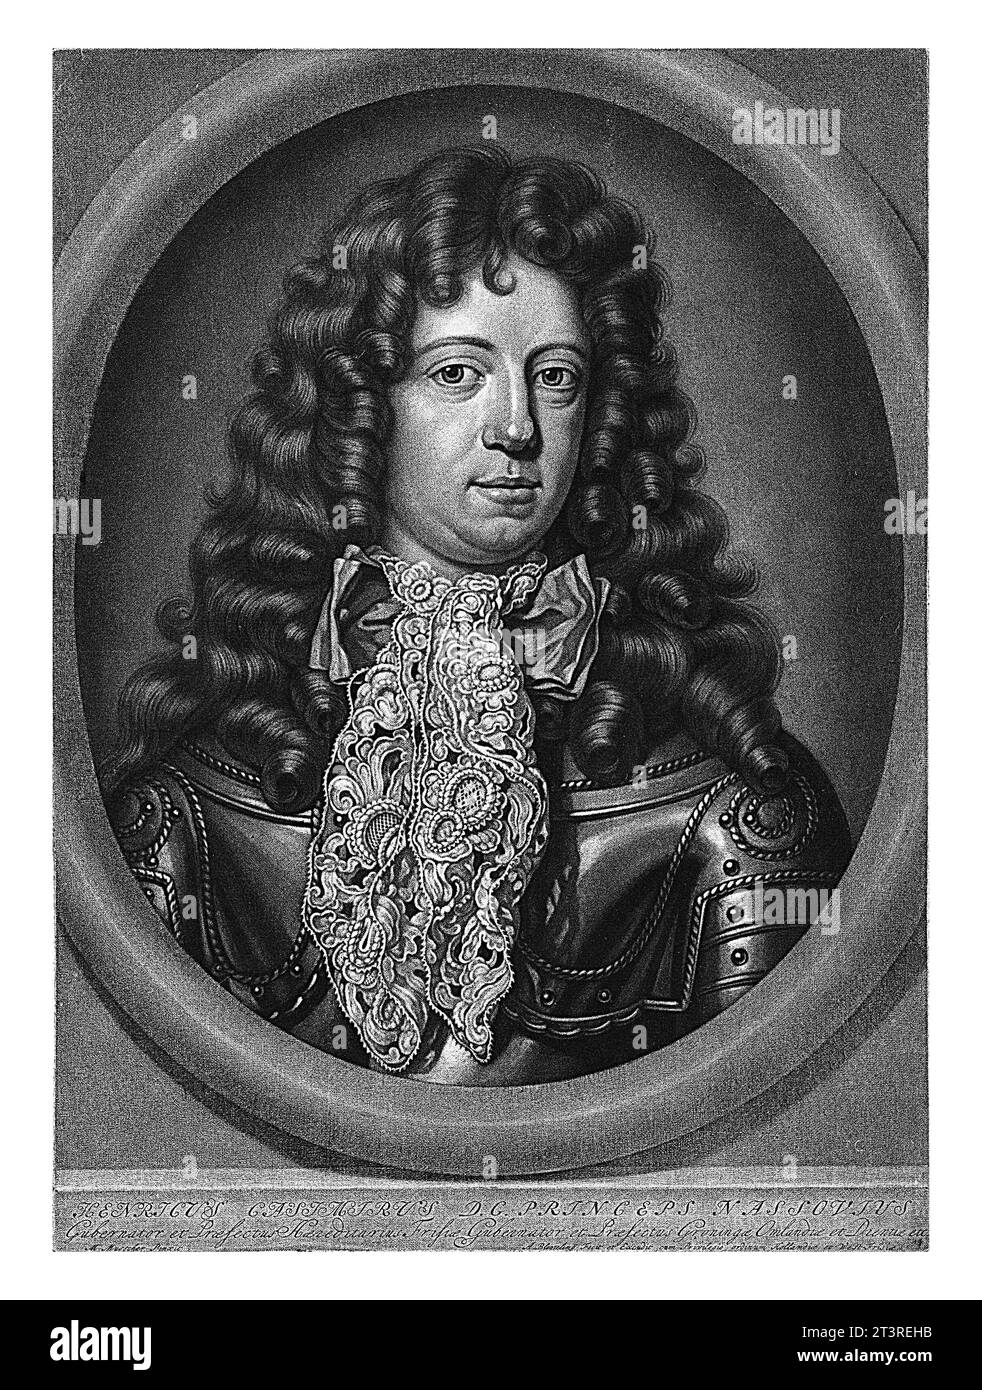 Portrait of Hendrik Casimir II, Abraham Bloteling, after Michiel van Musscher, 1664 - 1690 Portrait of Hendrik Casimir II, Count of Nassau-Dietz and s Stock Photo